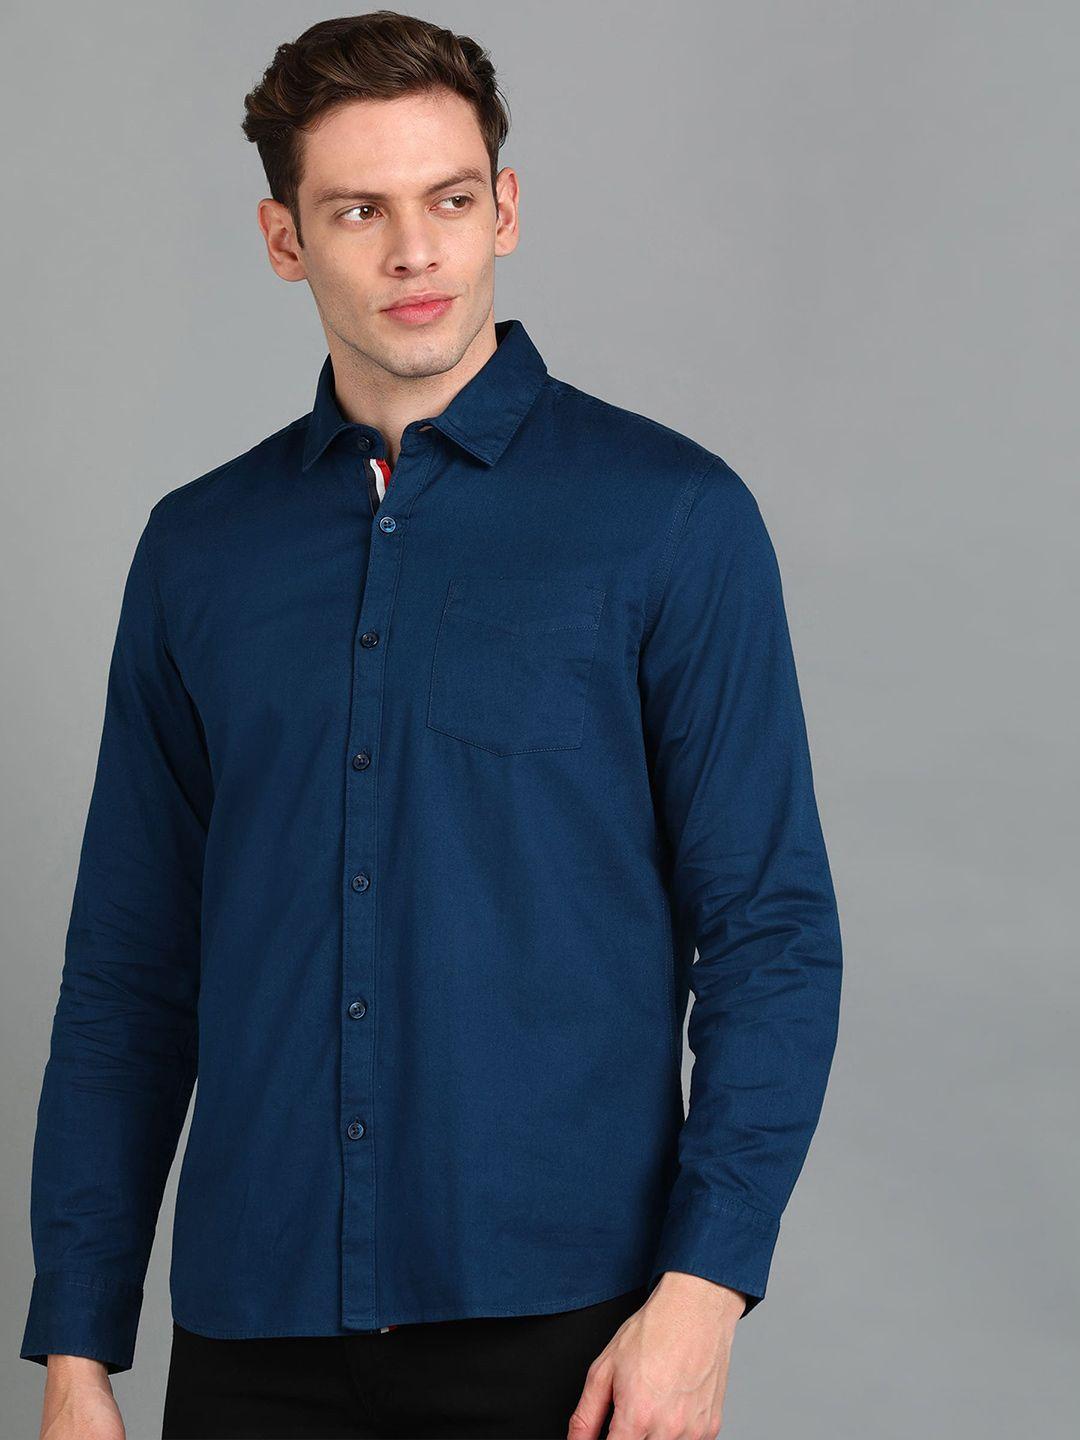 urbano-fashion-spread-collar-slim-fit-pure-cotton-casual-shirt